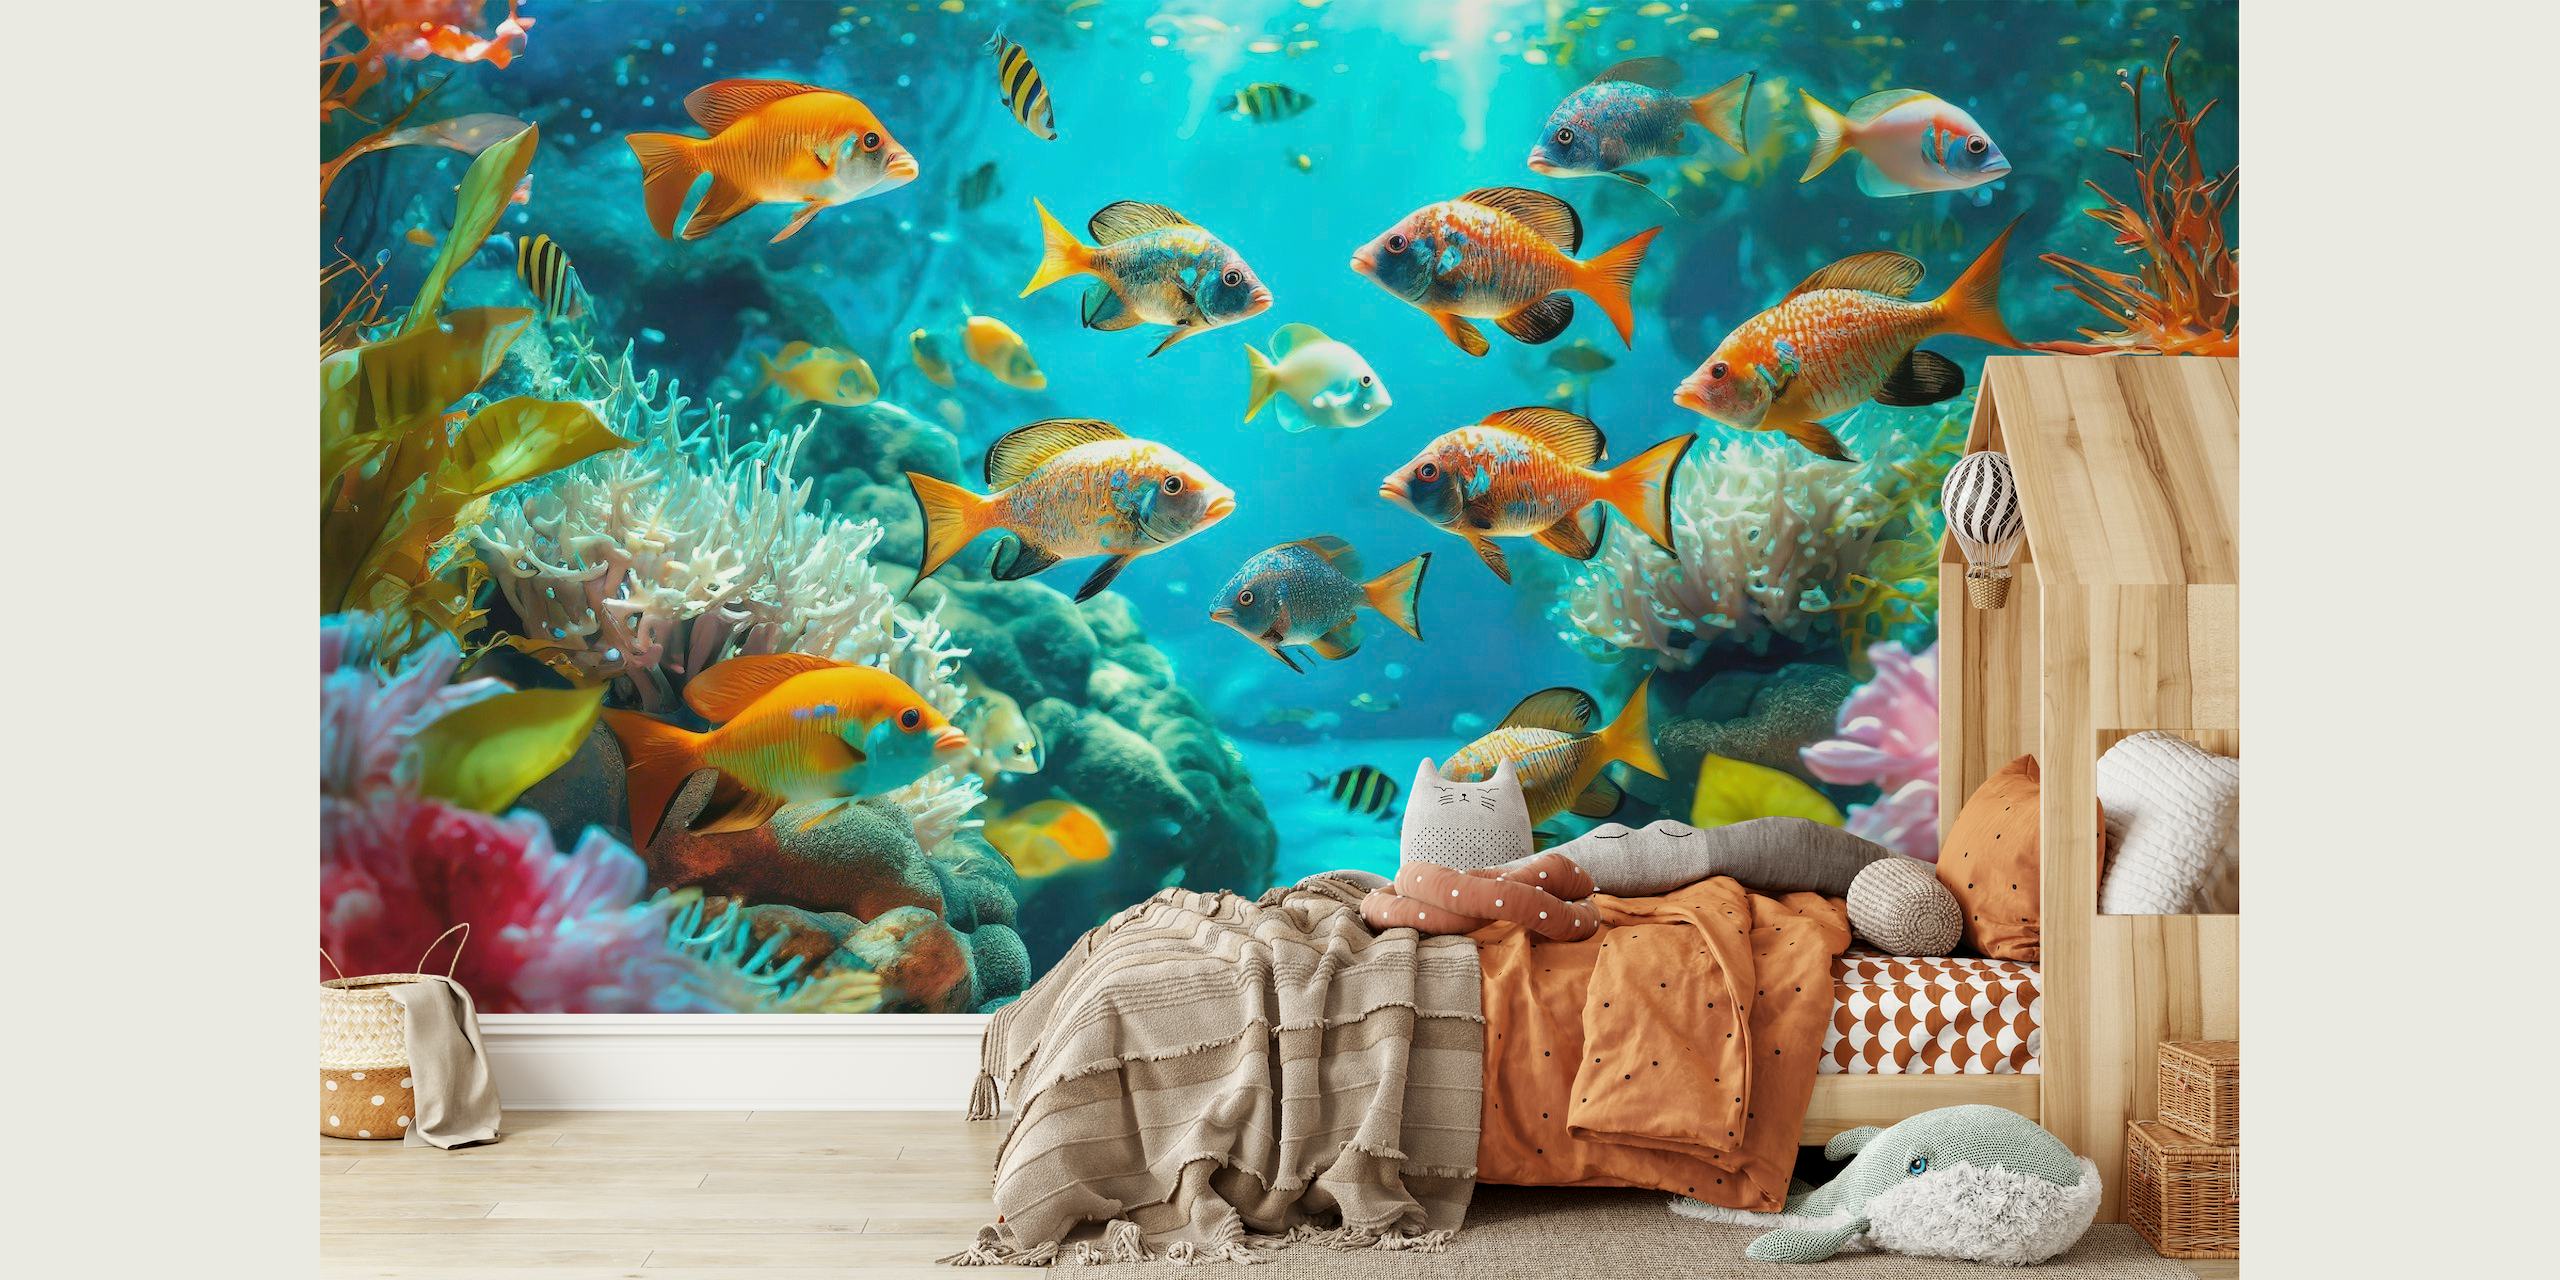 Eloisa vedenalainen seinämaalaus, jossa värikkäät kalat uivat korallien seassa